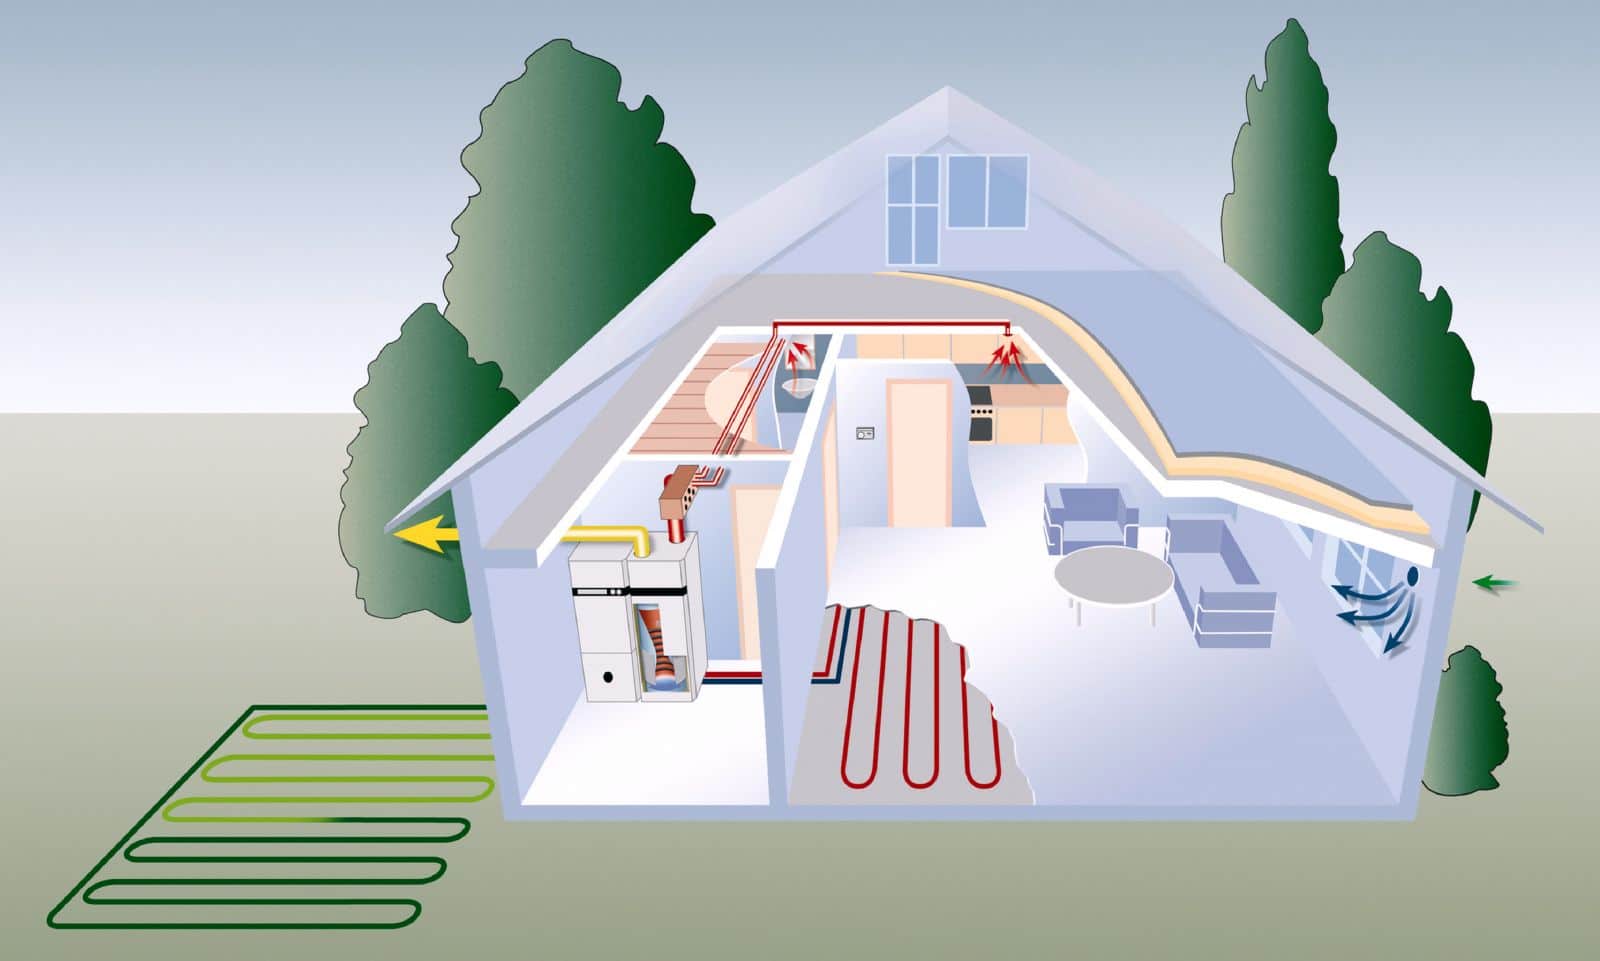 Как выбрать экономичное отопление частного дома – обзор различных систем и вариантов отопления